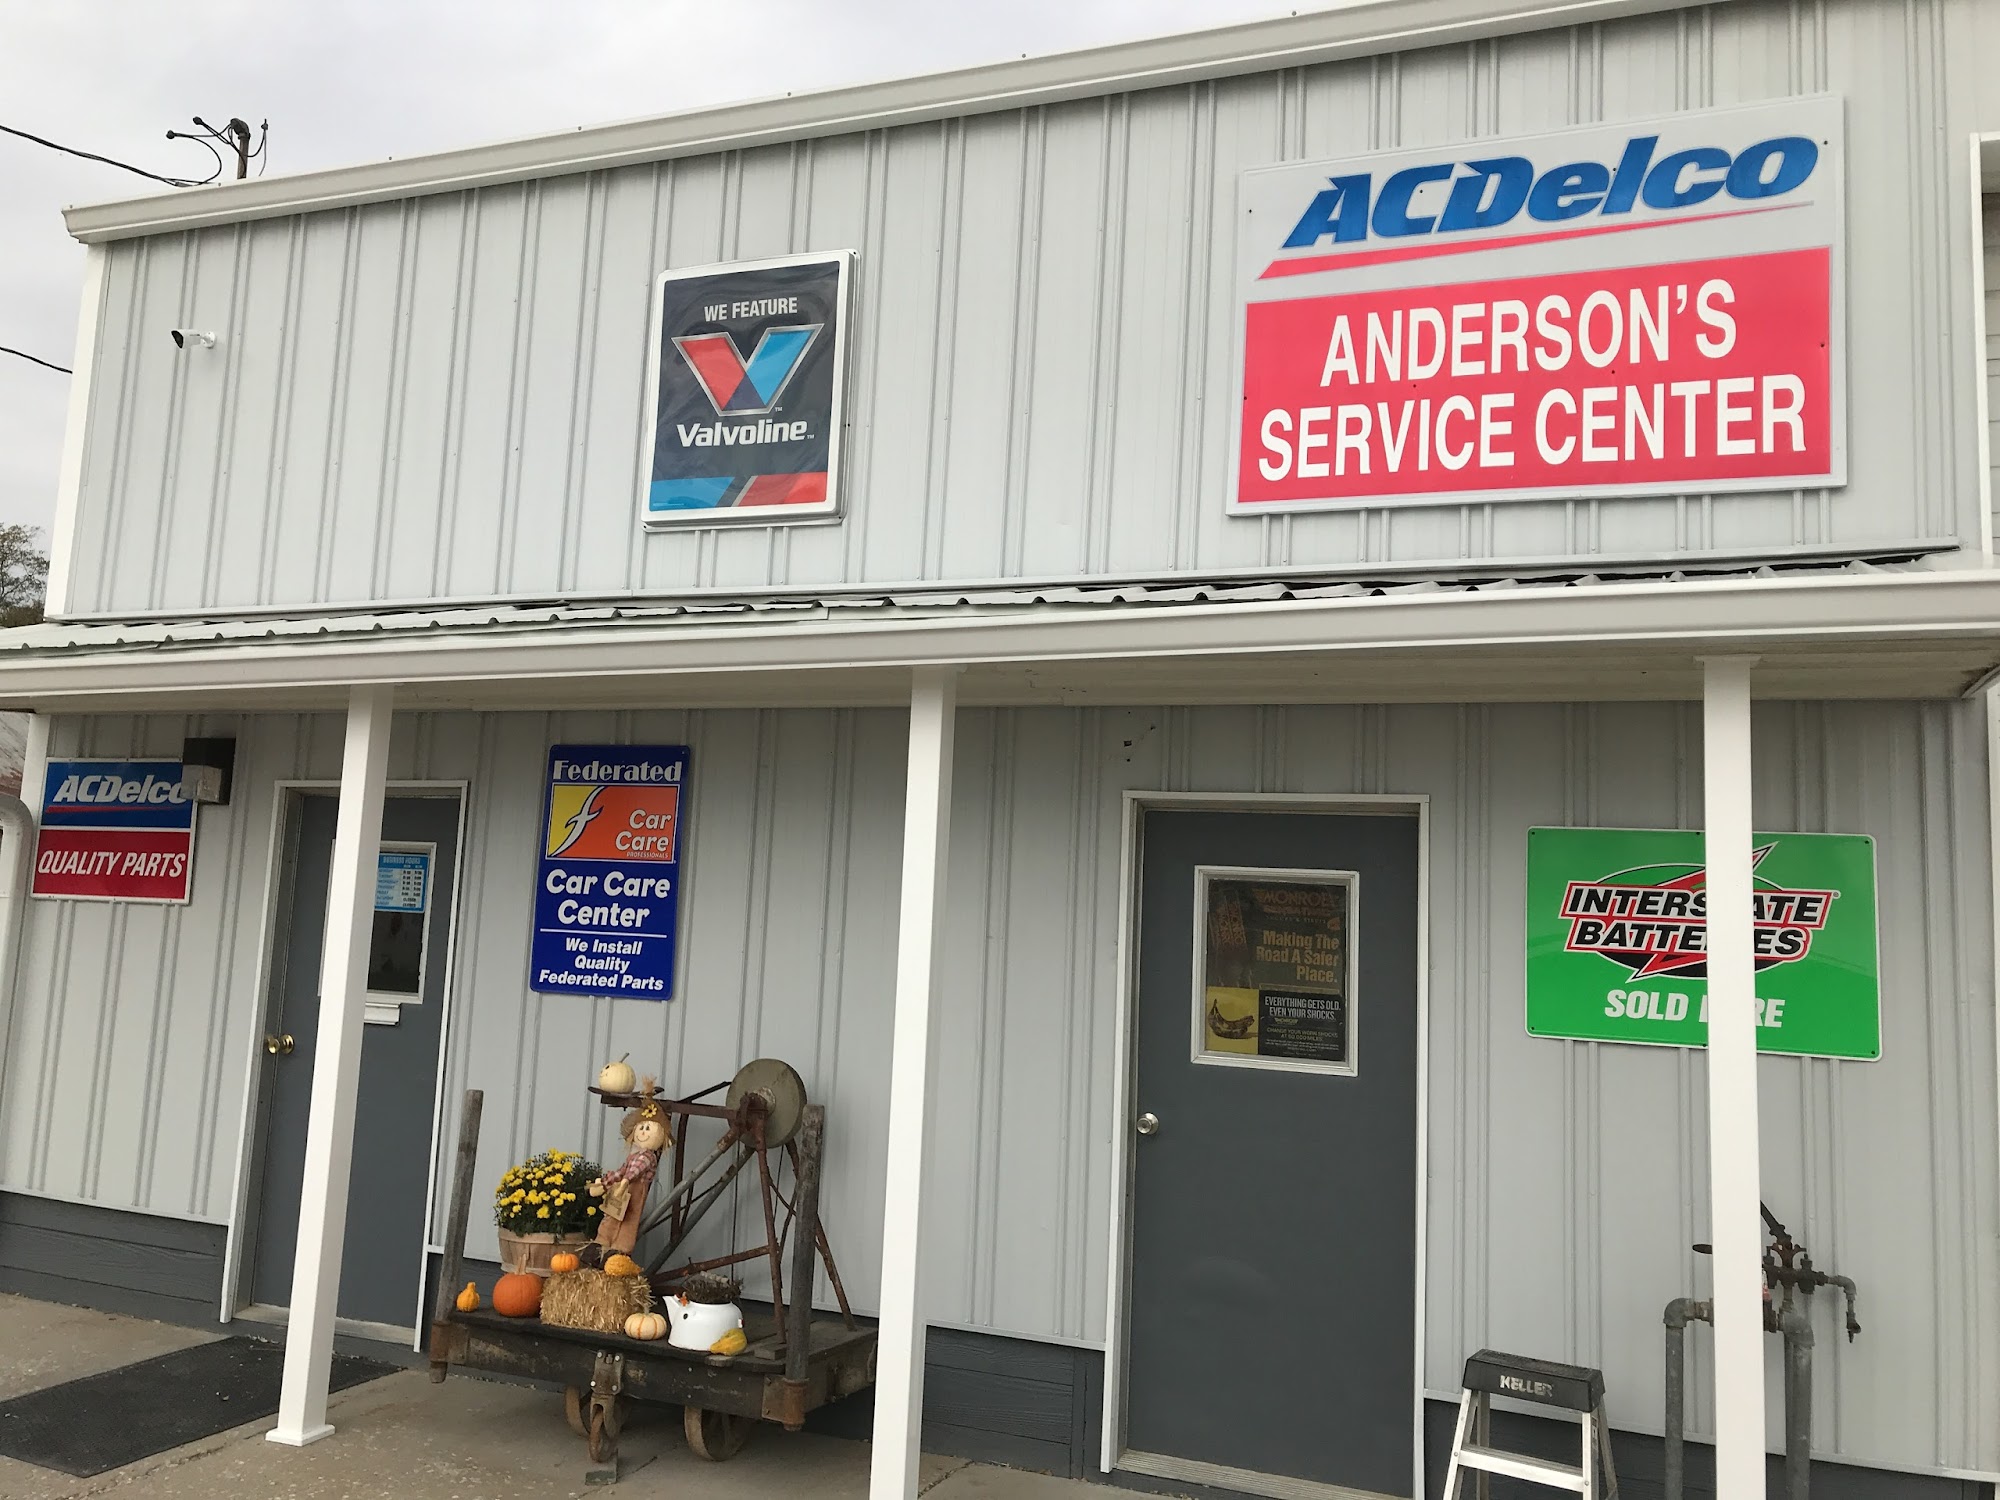 Anderson's Service Center